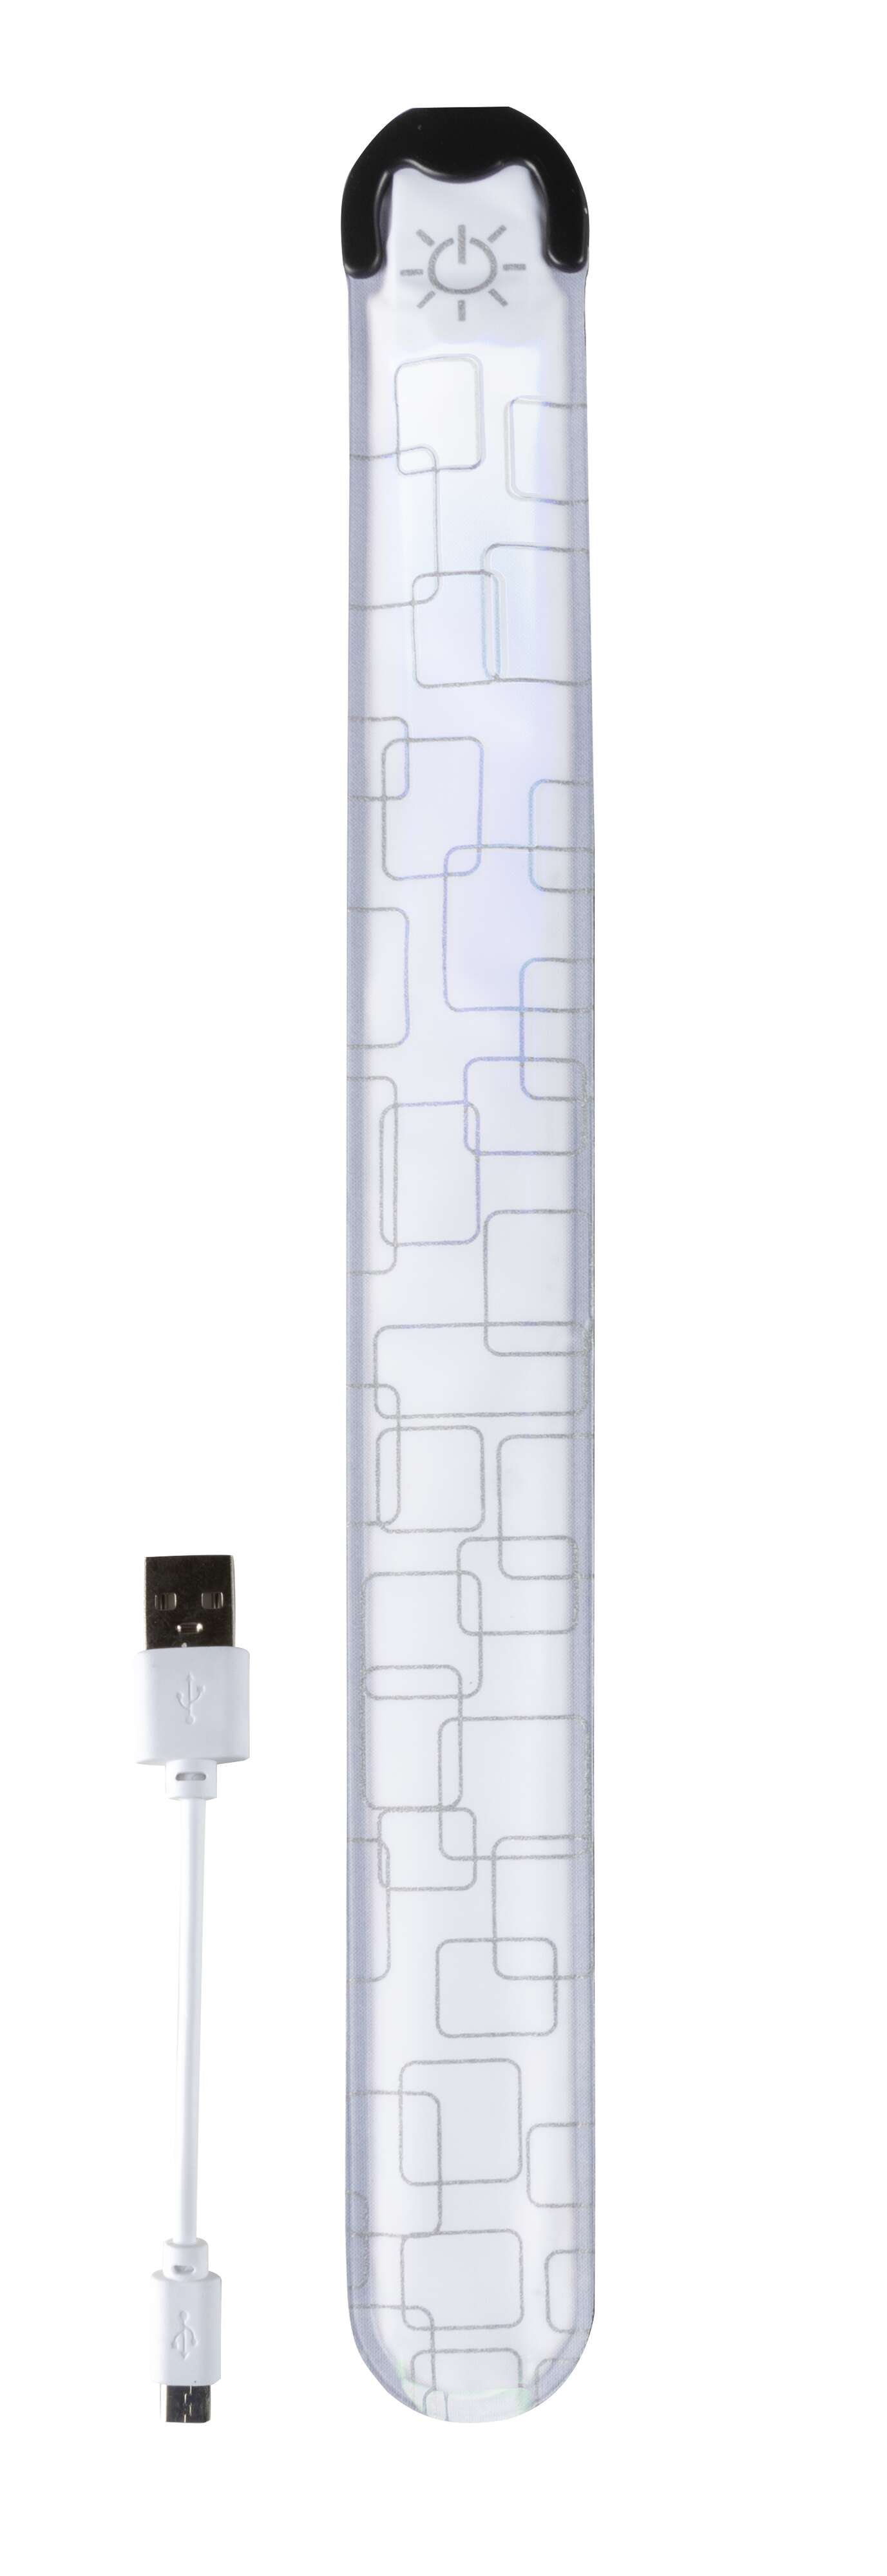 Slap Wrap LED lumineux avec recharge USB 36x3,5 cm argenté